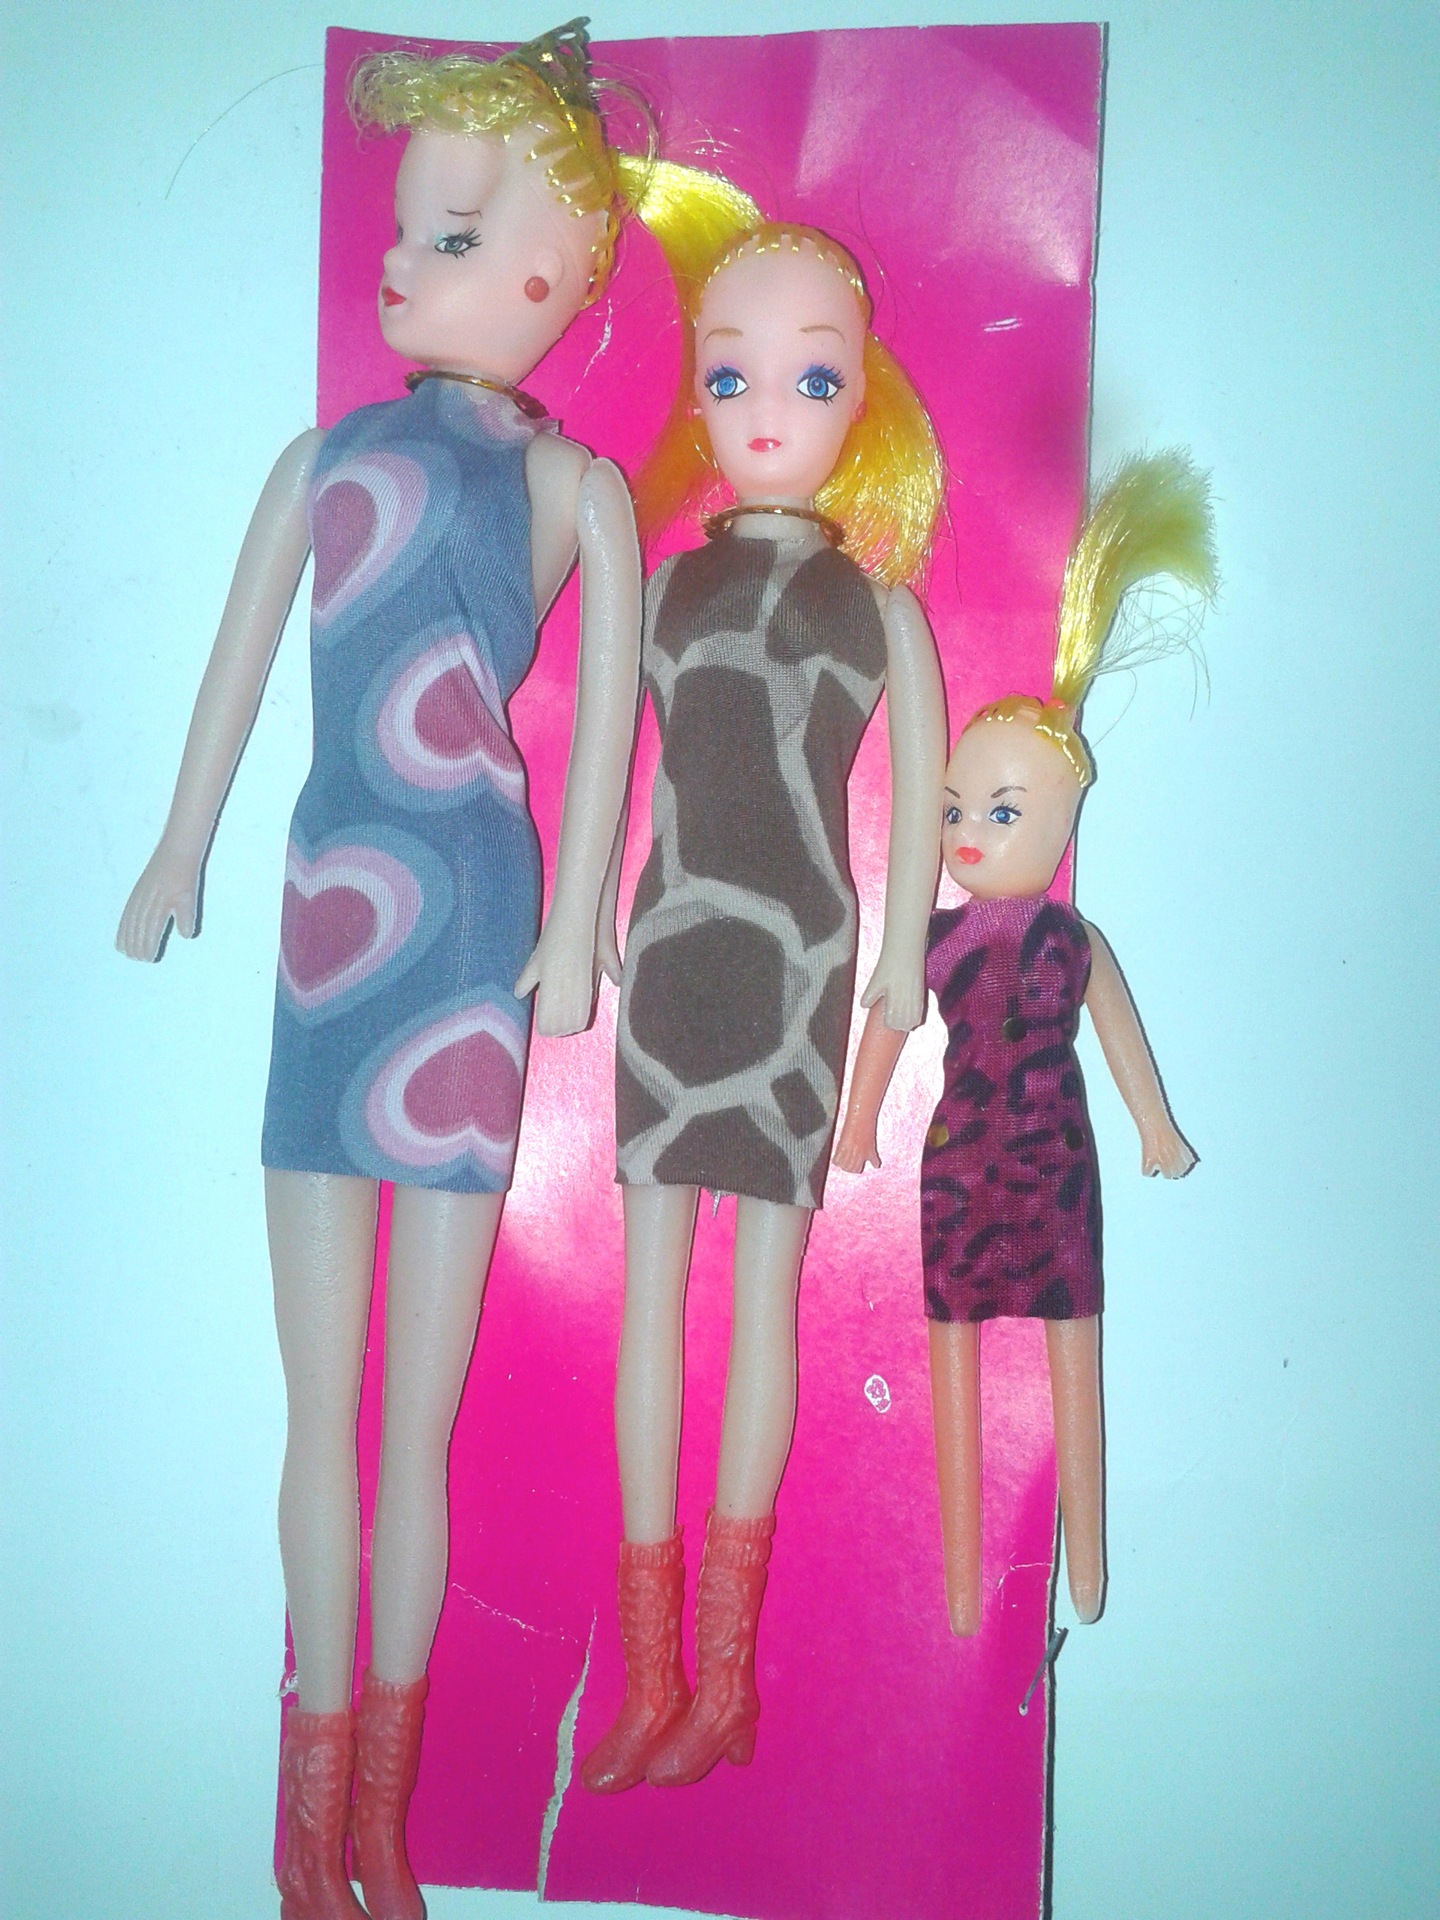 3个芭比娃娃 儿童玩具 2元店专批 2元店货源 益智玩具 厂家直销